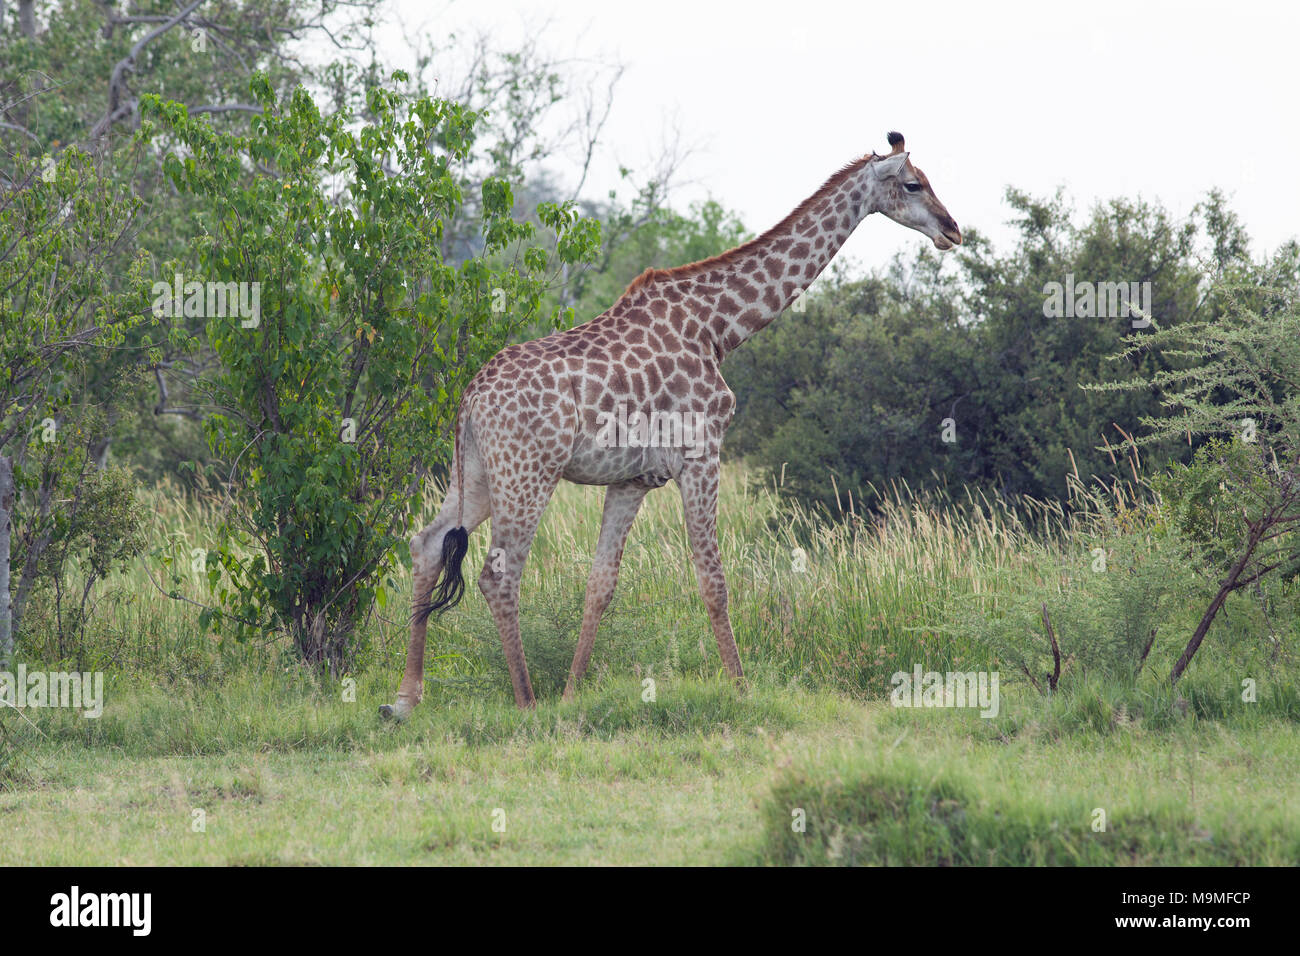 Girafe (Giraffa camelopardalis angolensis). Notez la forme, motif, de marquages manteau bas longueur de jambes, l'identification de cette sous-espèce. Balades adultes être Banque D'Images